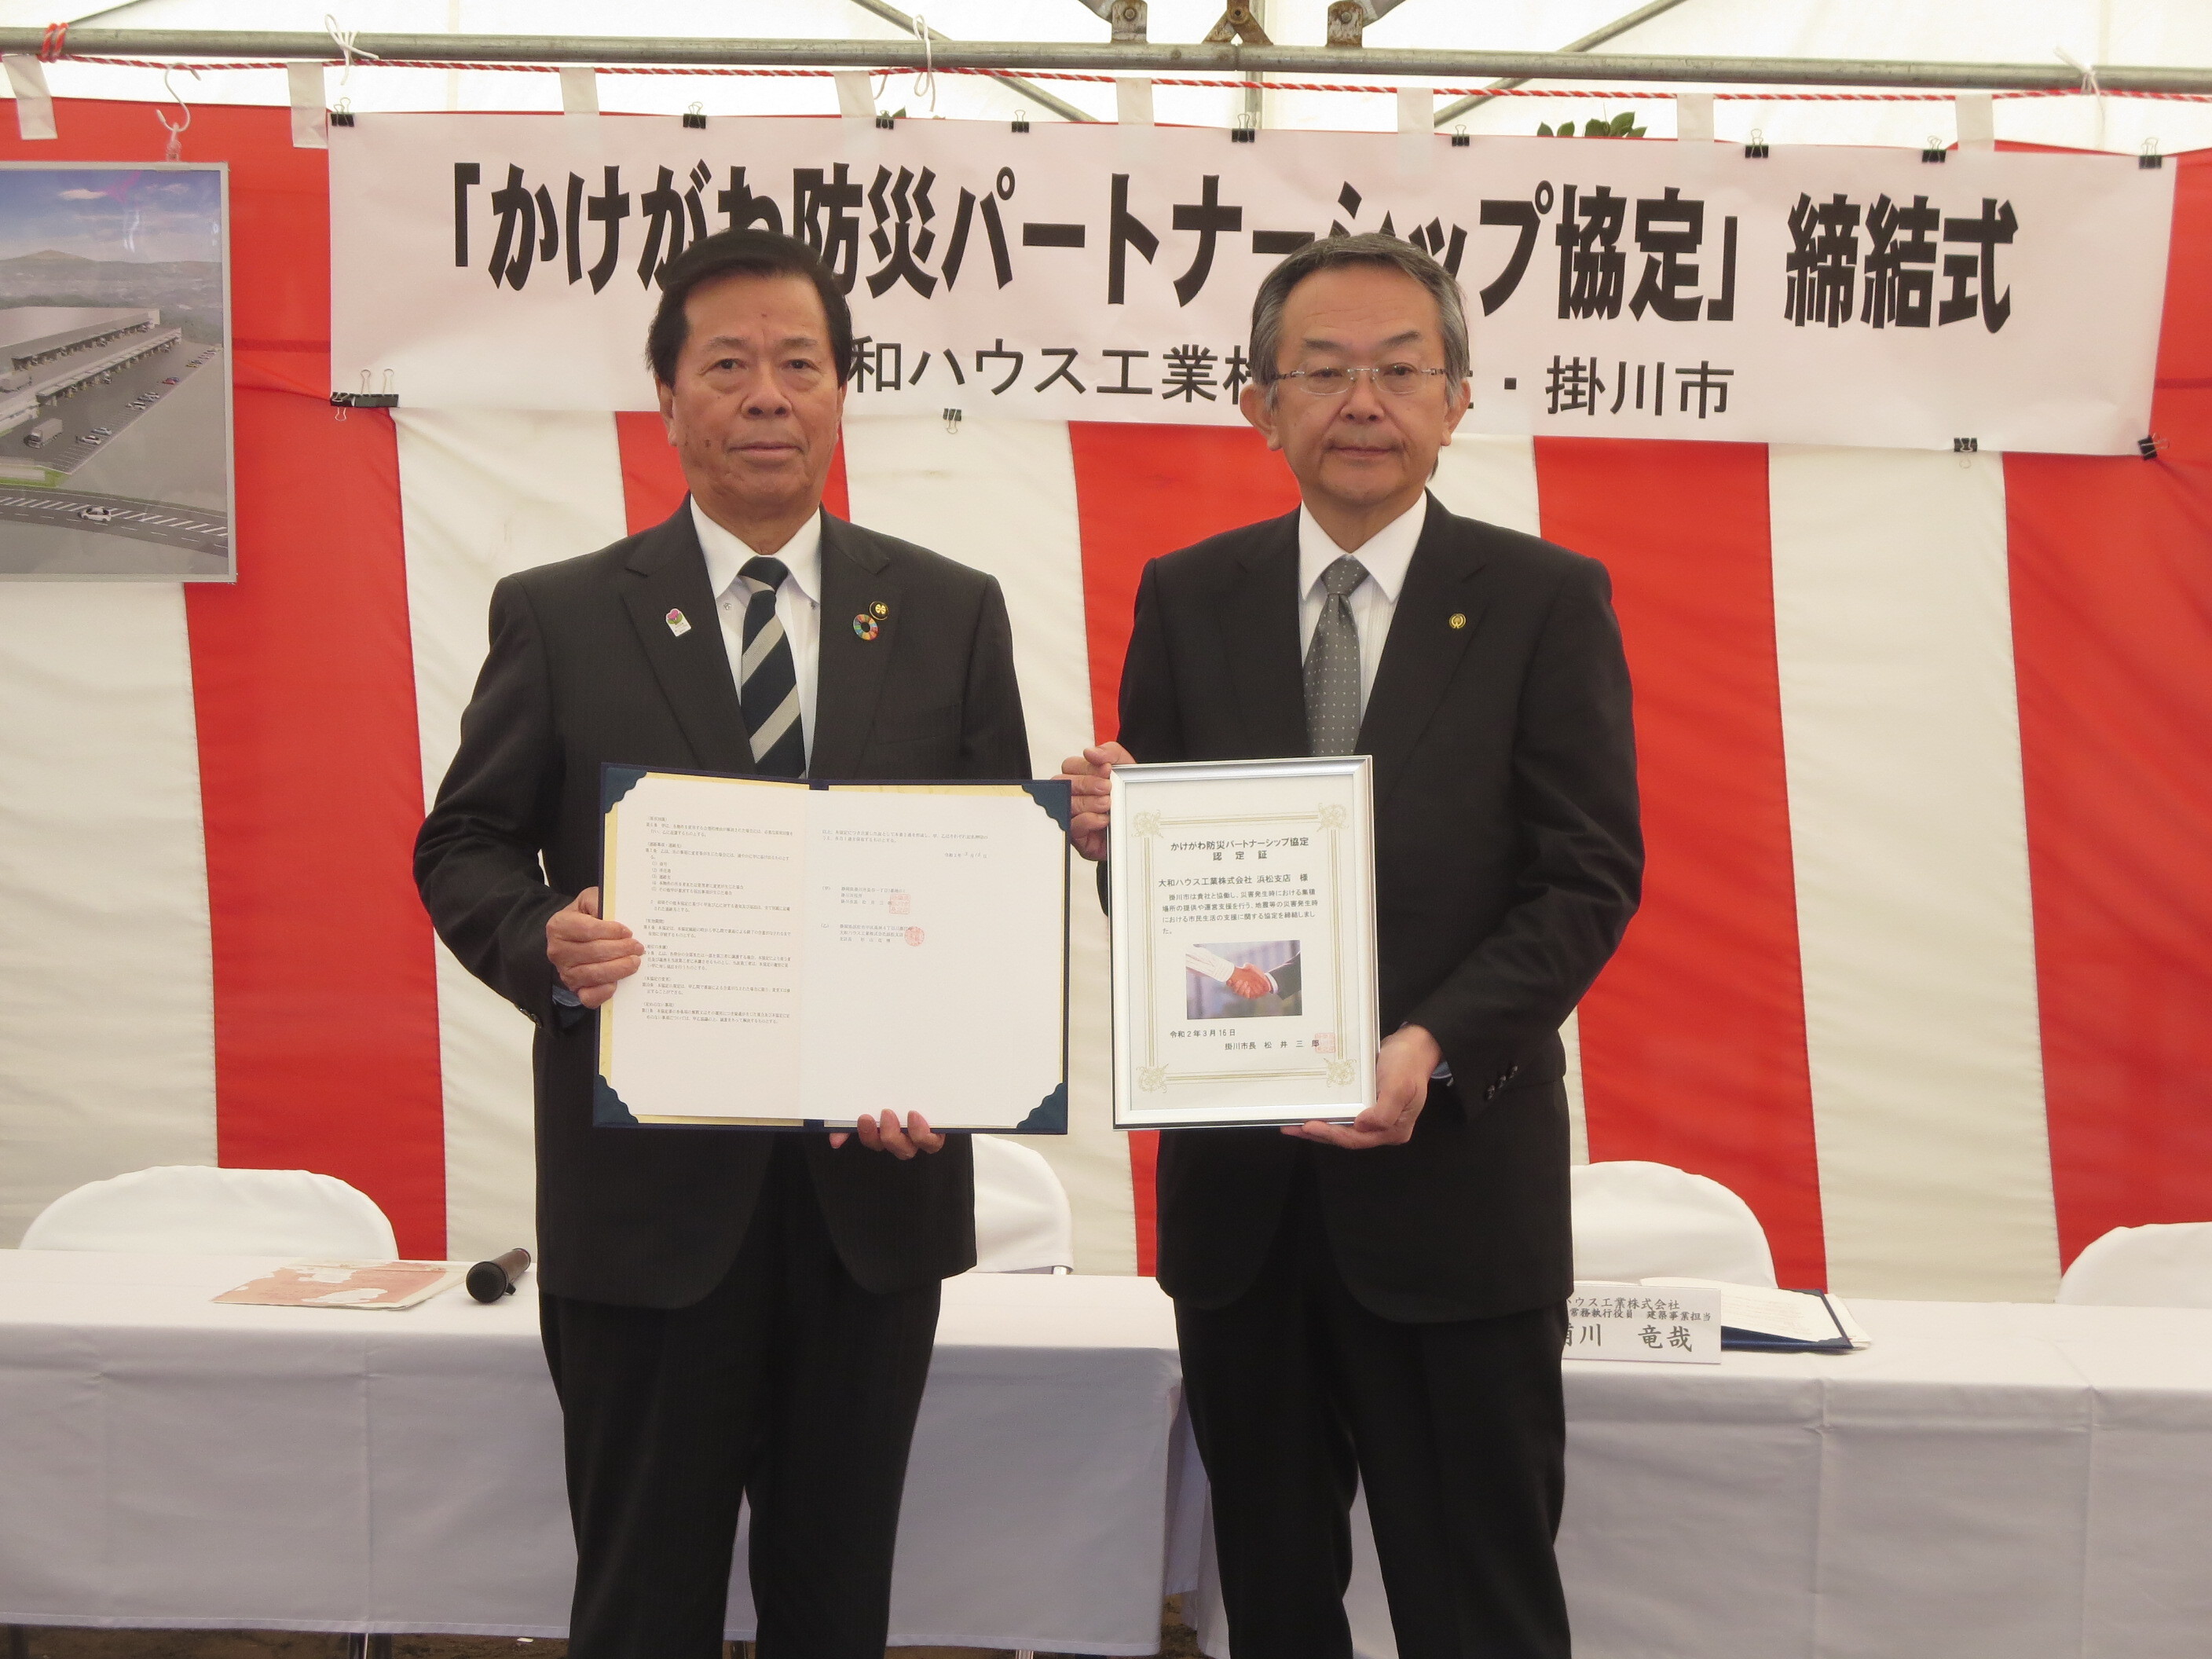 大和ハウス工業株式会社浜松支店と掛川市の協定締結書を持って写真に写る男性二人